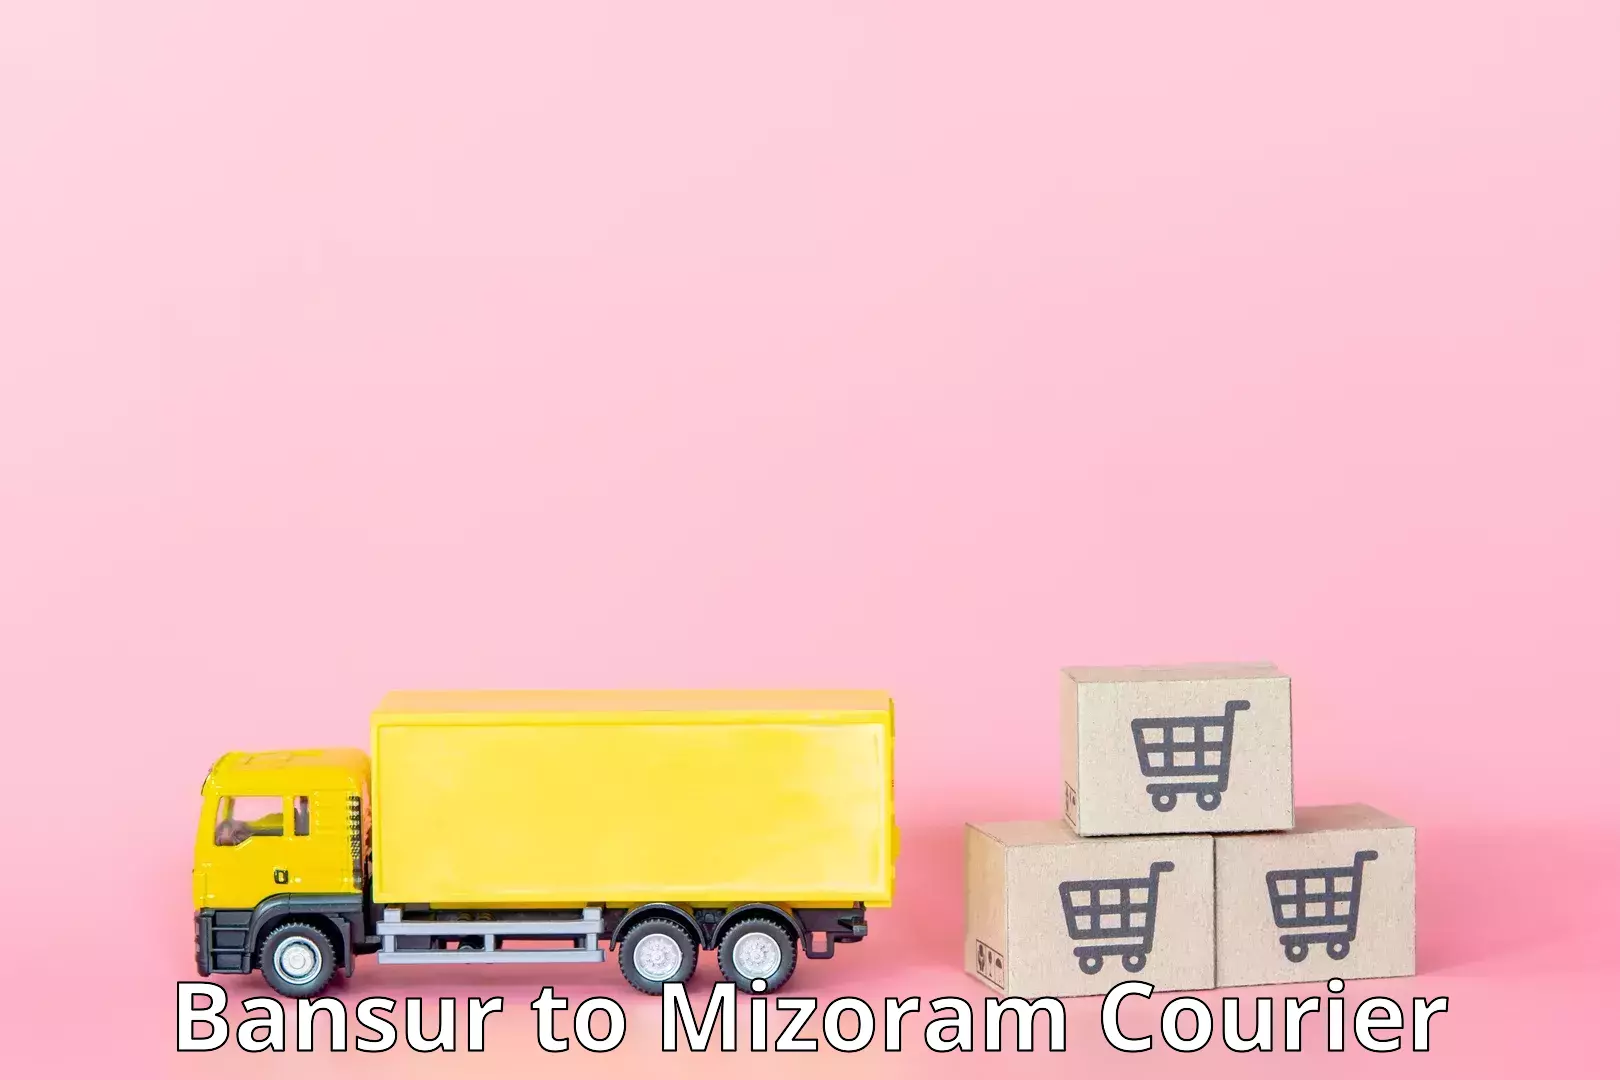 24-hour courier service Bansur to Aizawl